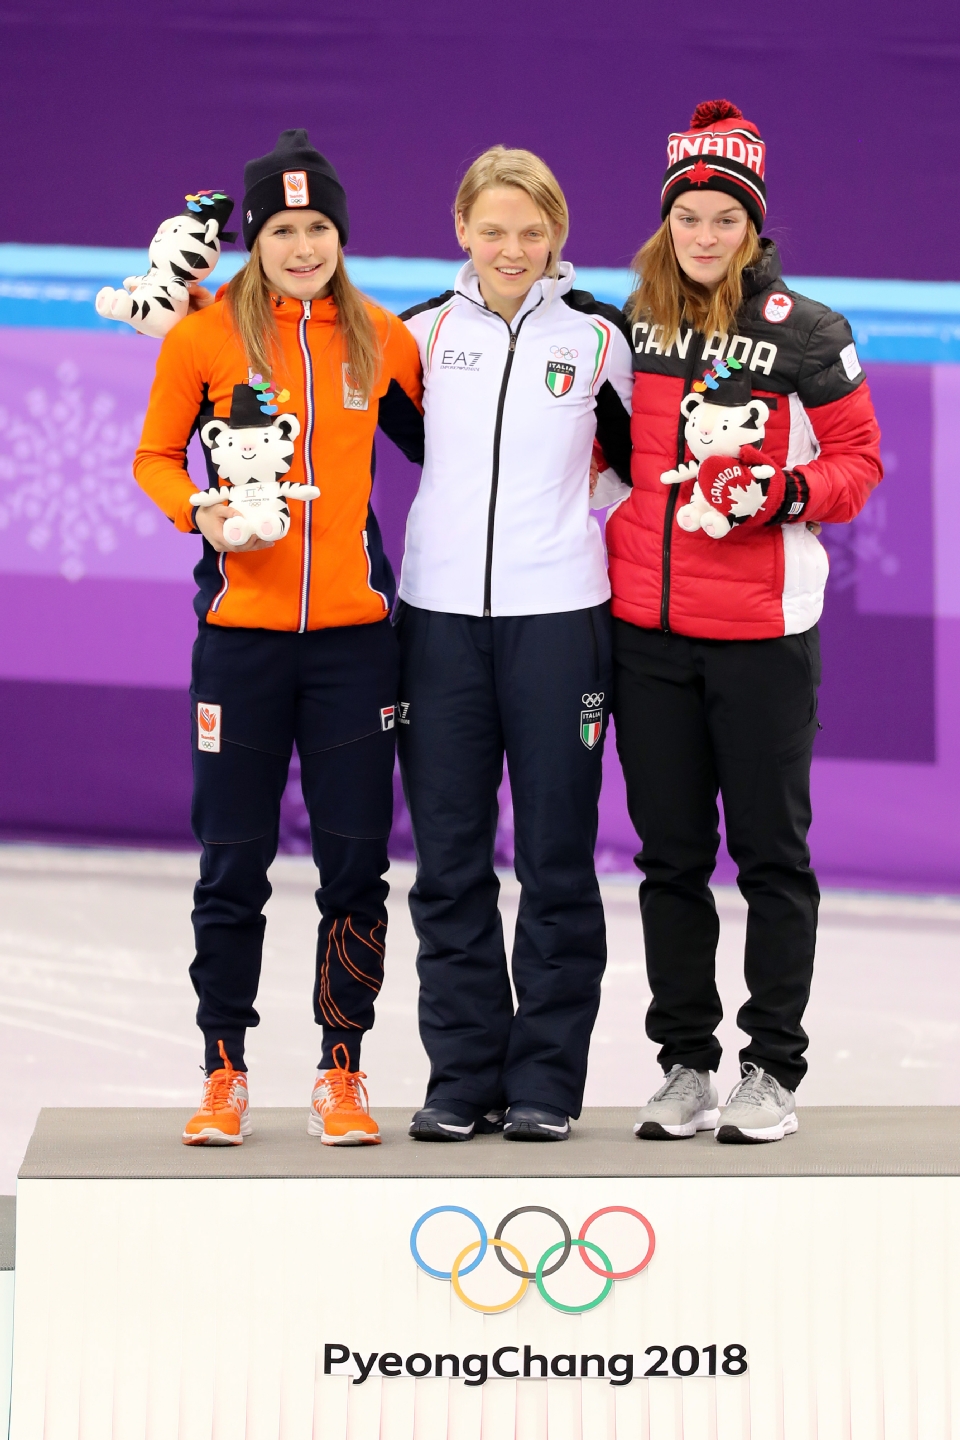 쇼트트랙 스피드 스케이팅 여자 500m  결승, 이탈리아의 아리아나 폰타나 금메달